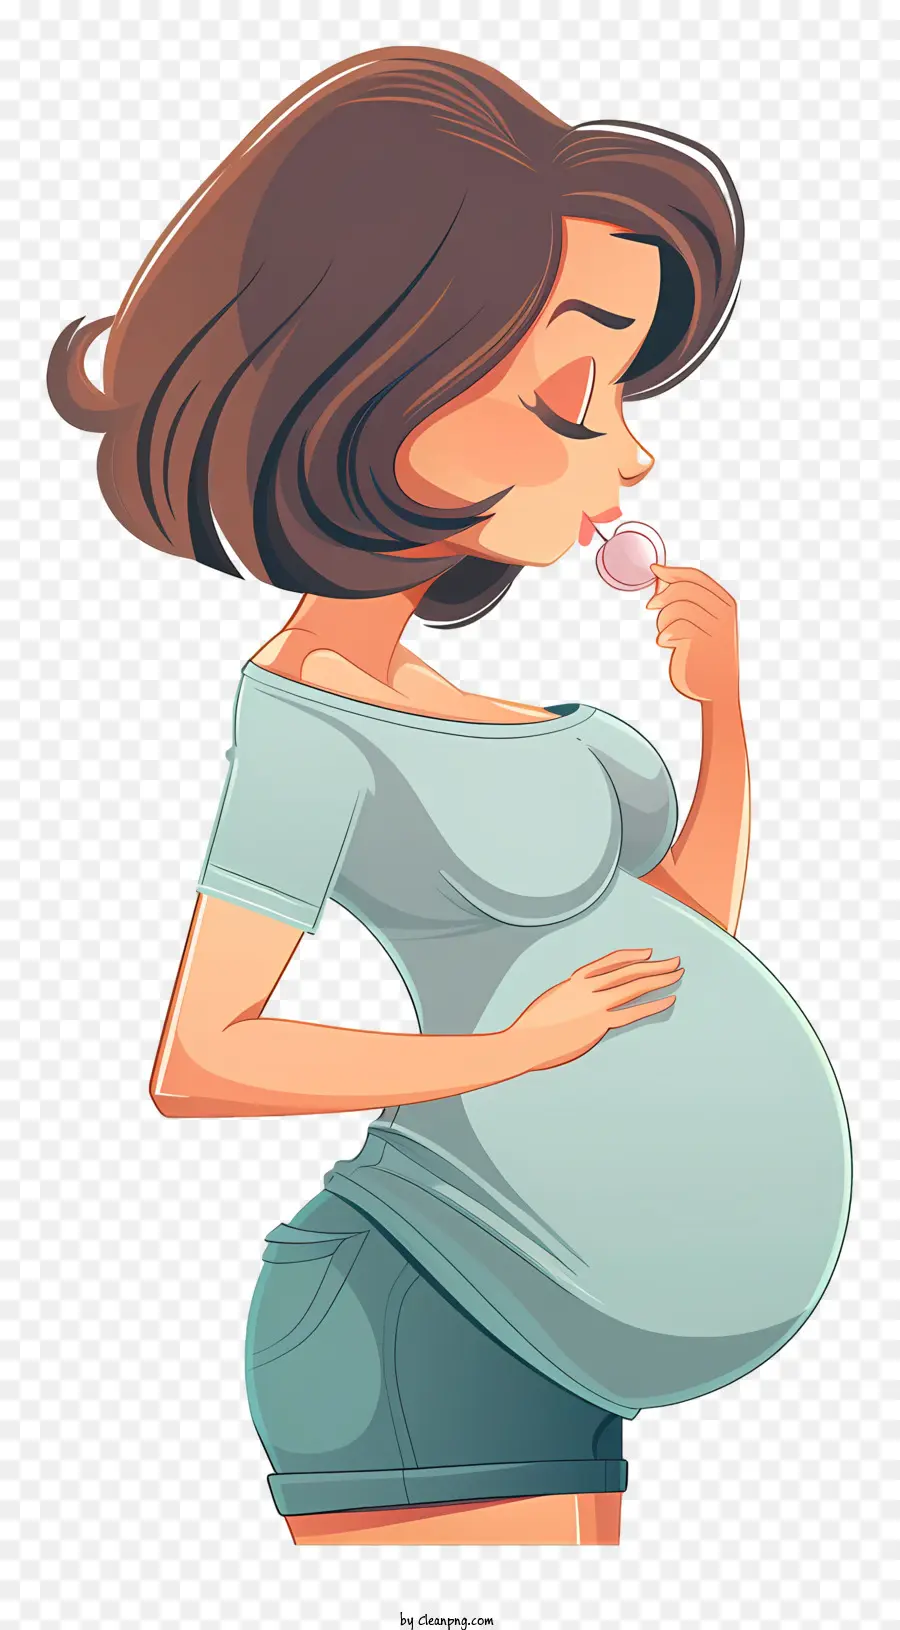 người phụ nữ mang thai hoạt hình mang thai nữ hoạt hình áo sơ mi xanh - Người phụ nữ mang thai liếm ngón tay theo phong cách hoạt hình